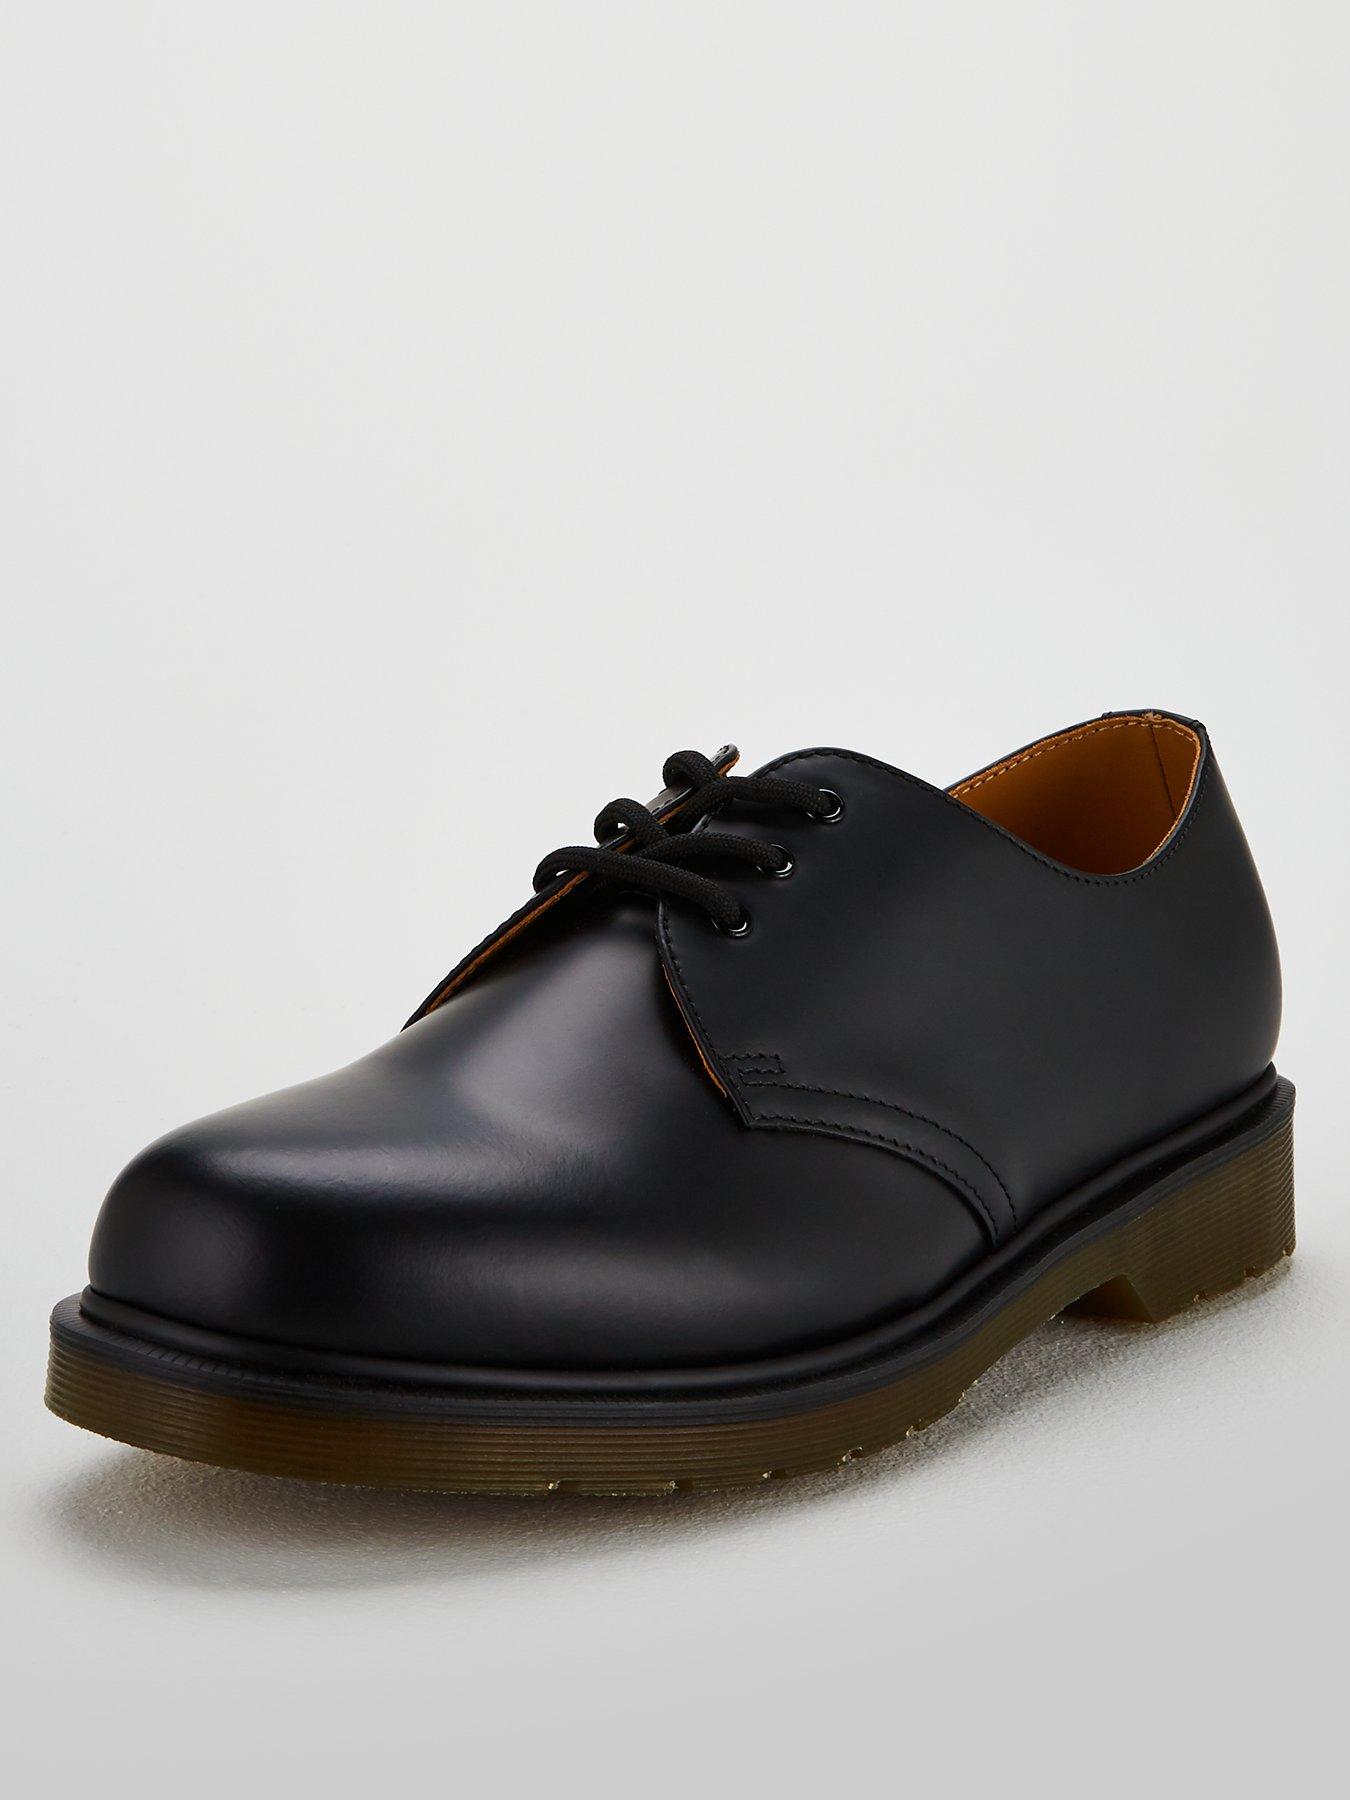 doc martens shoes 1461